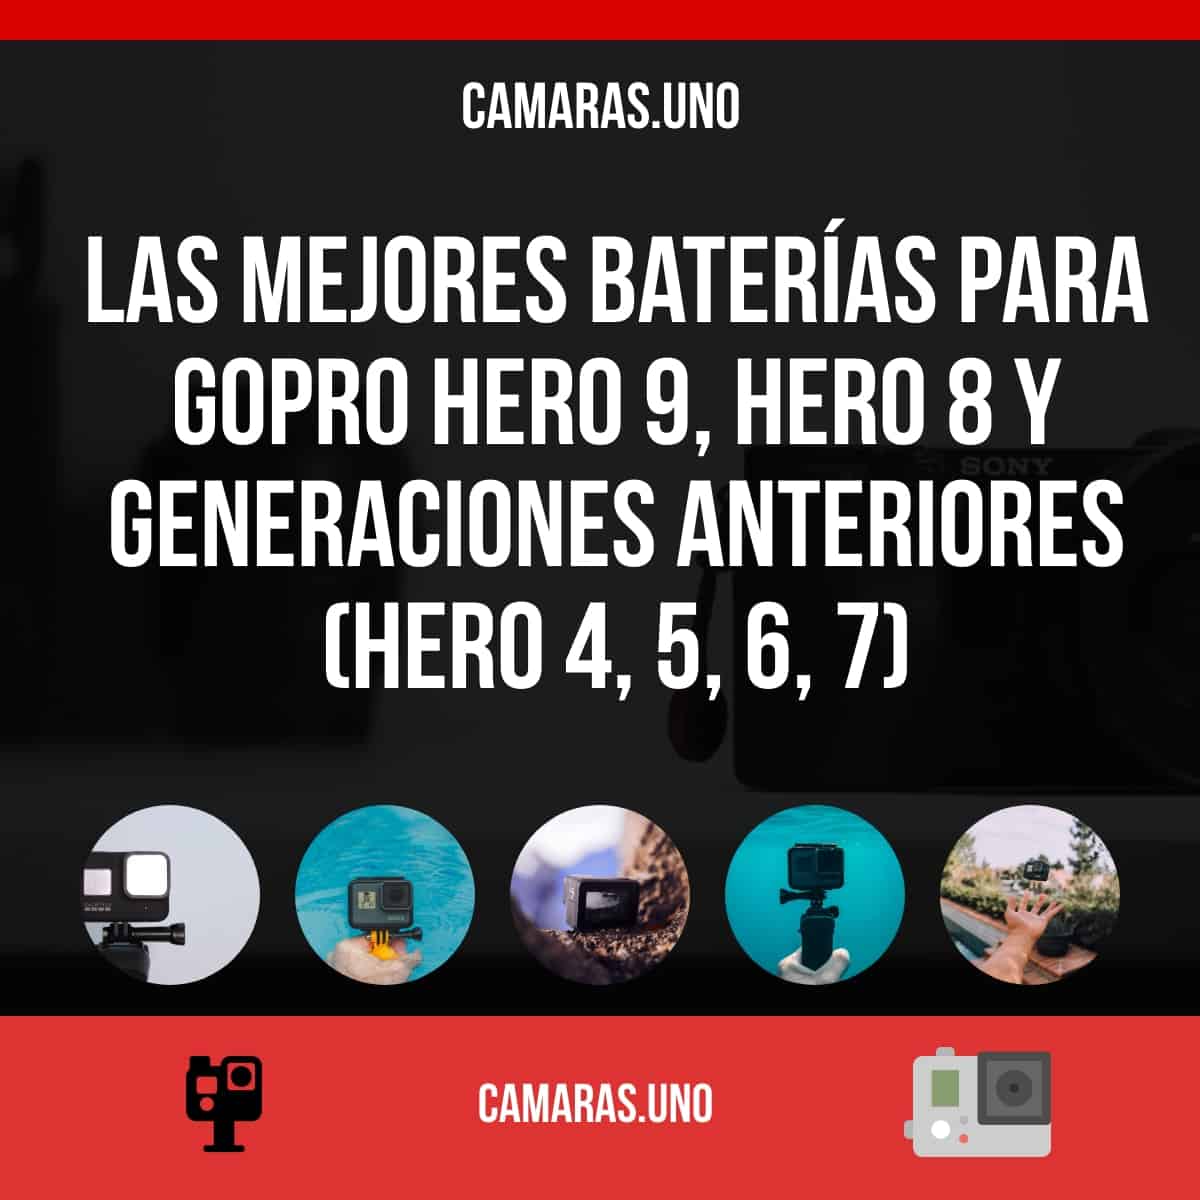 Las mejores baterías para GoPro HERO 9, HERO 8 y generaciones anteriores (HERO 4, 5, 6, 7)